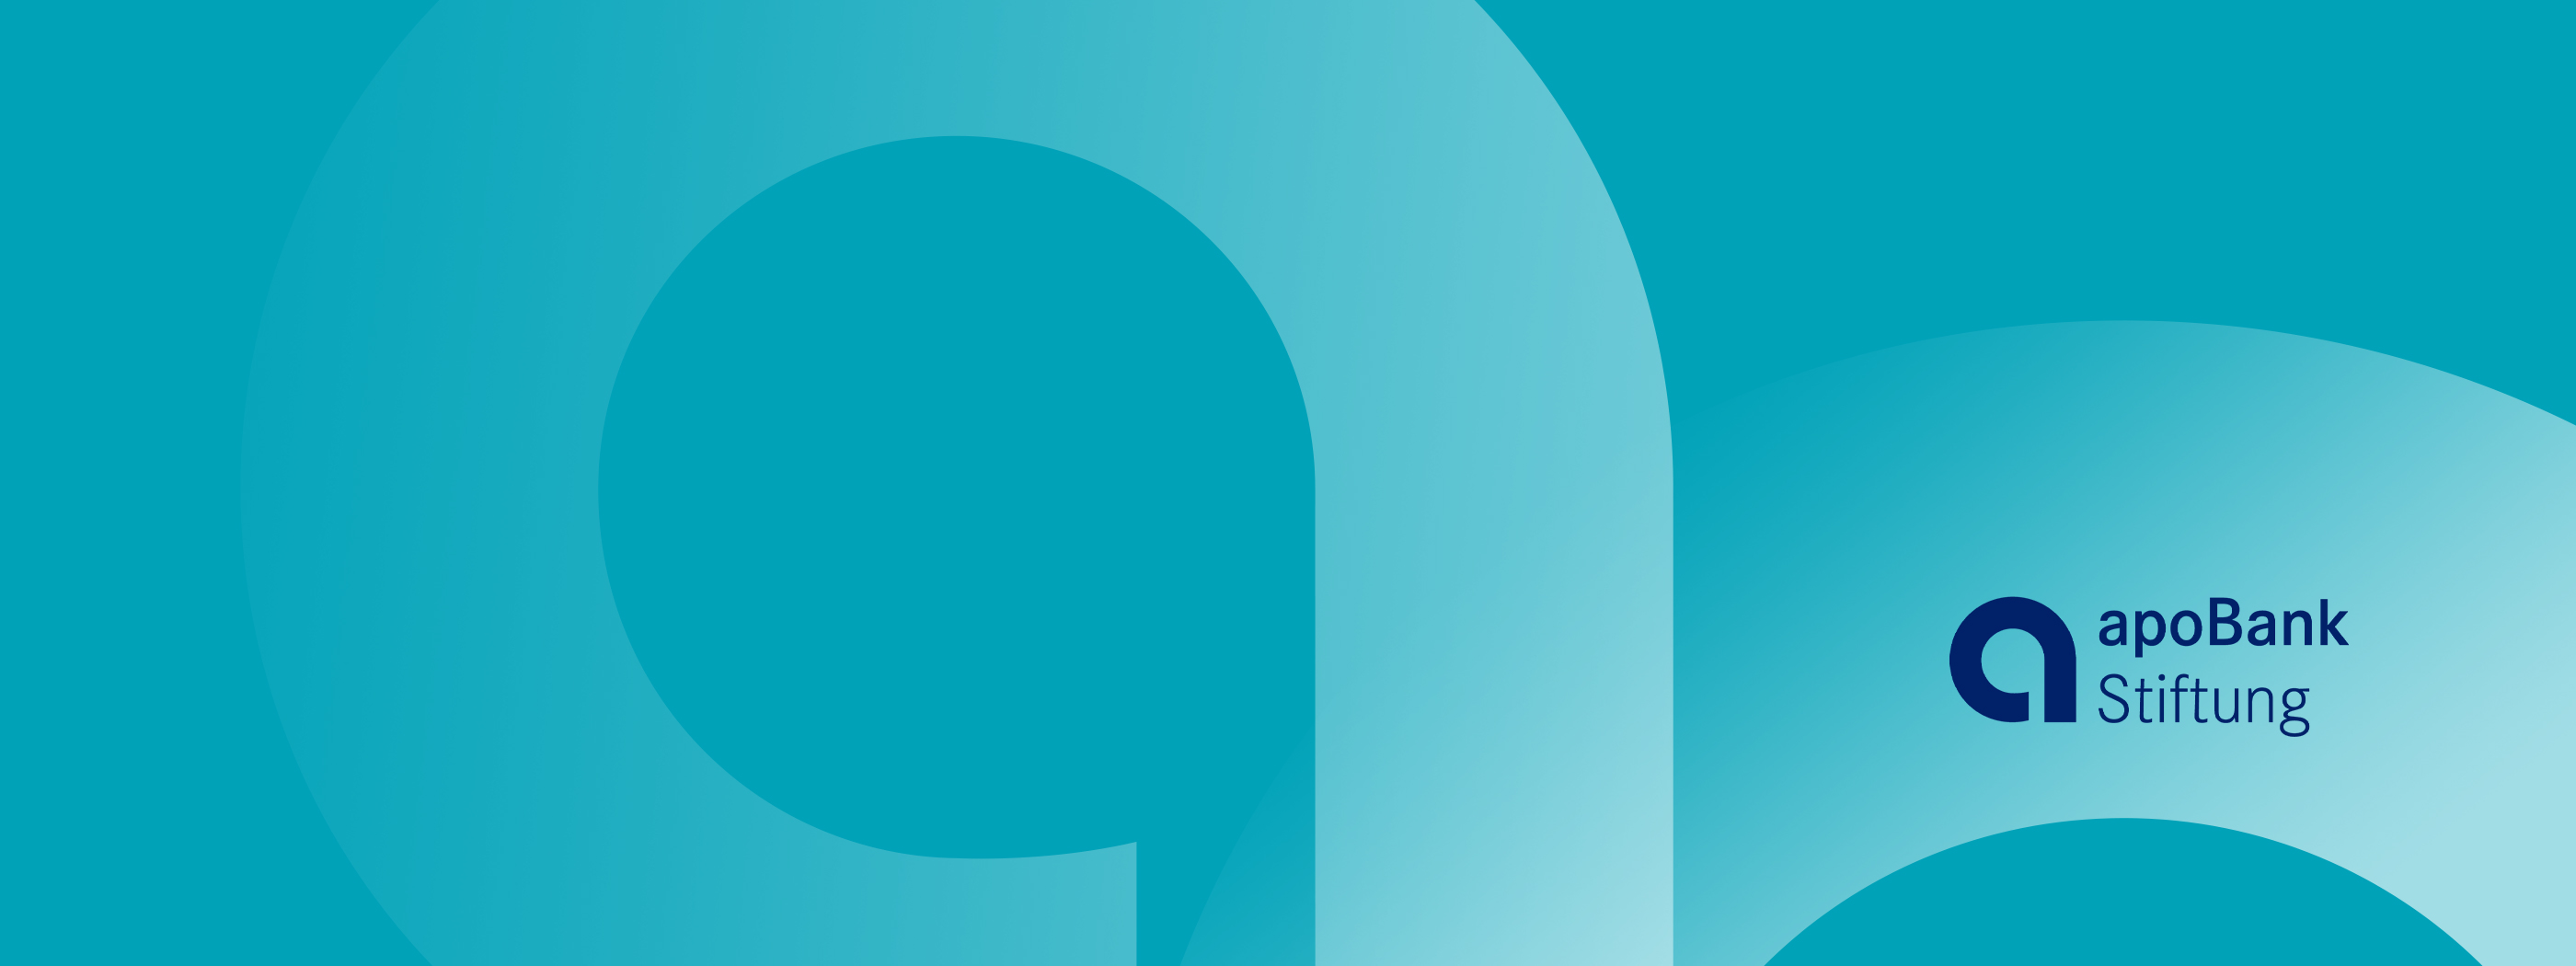 Logo der apoBank-Stiftung auf blauem Hintergrund